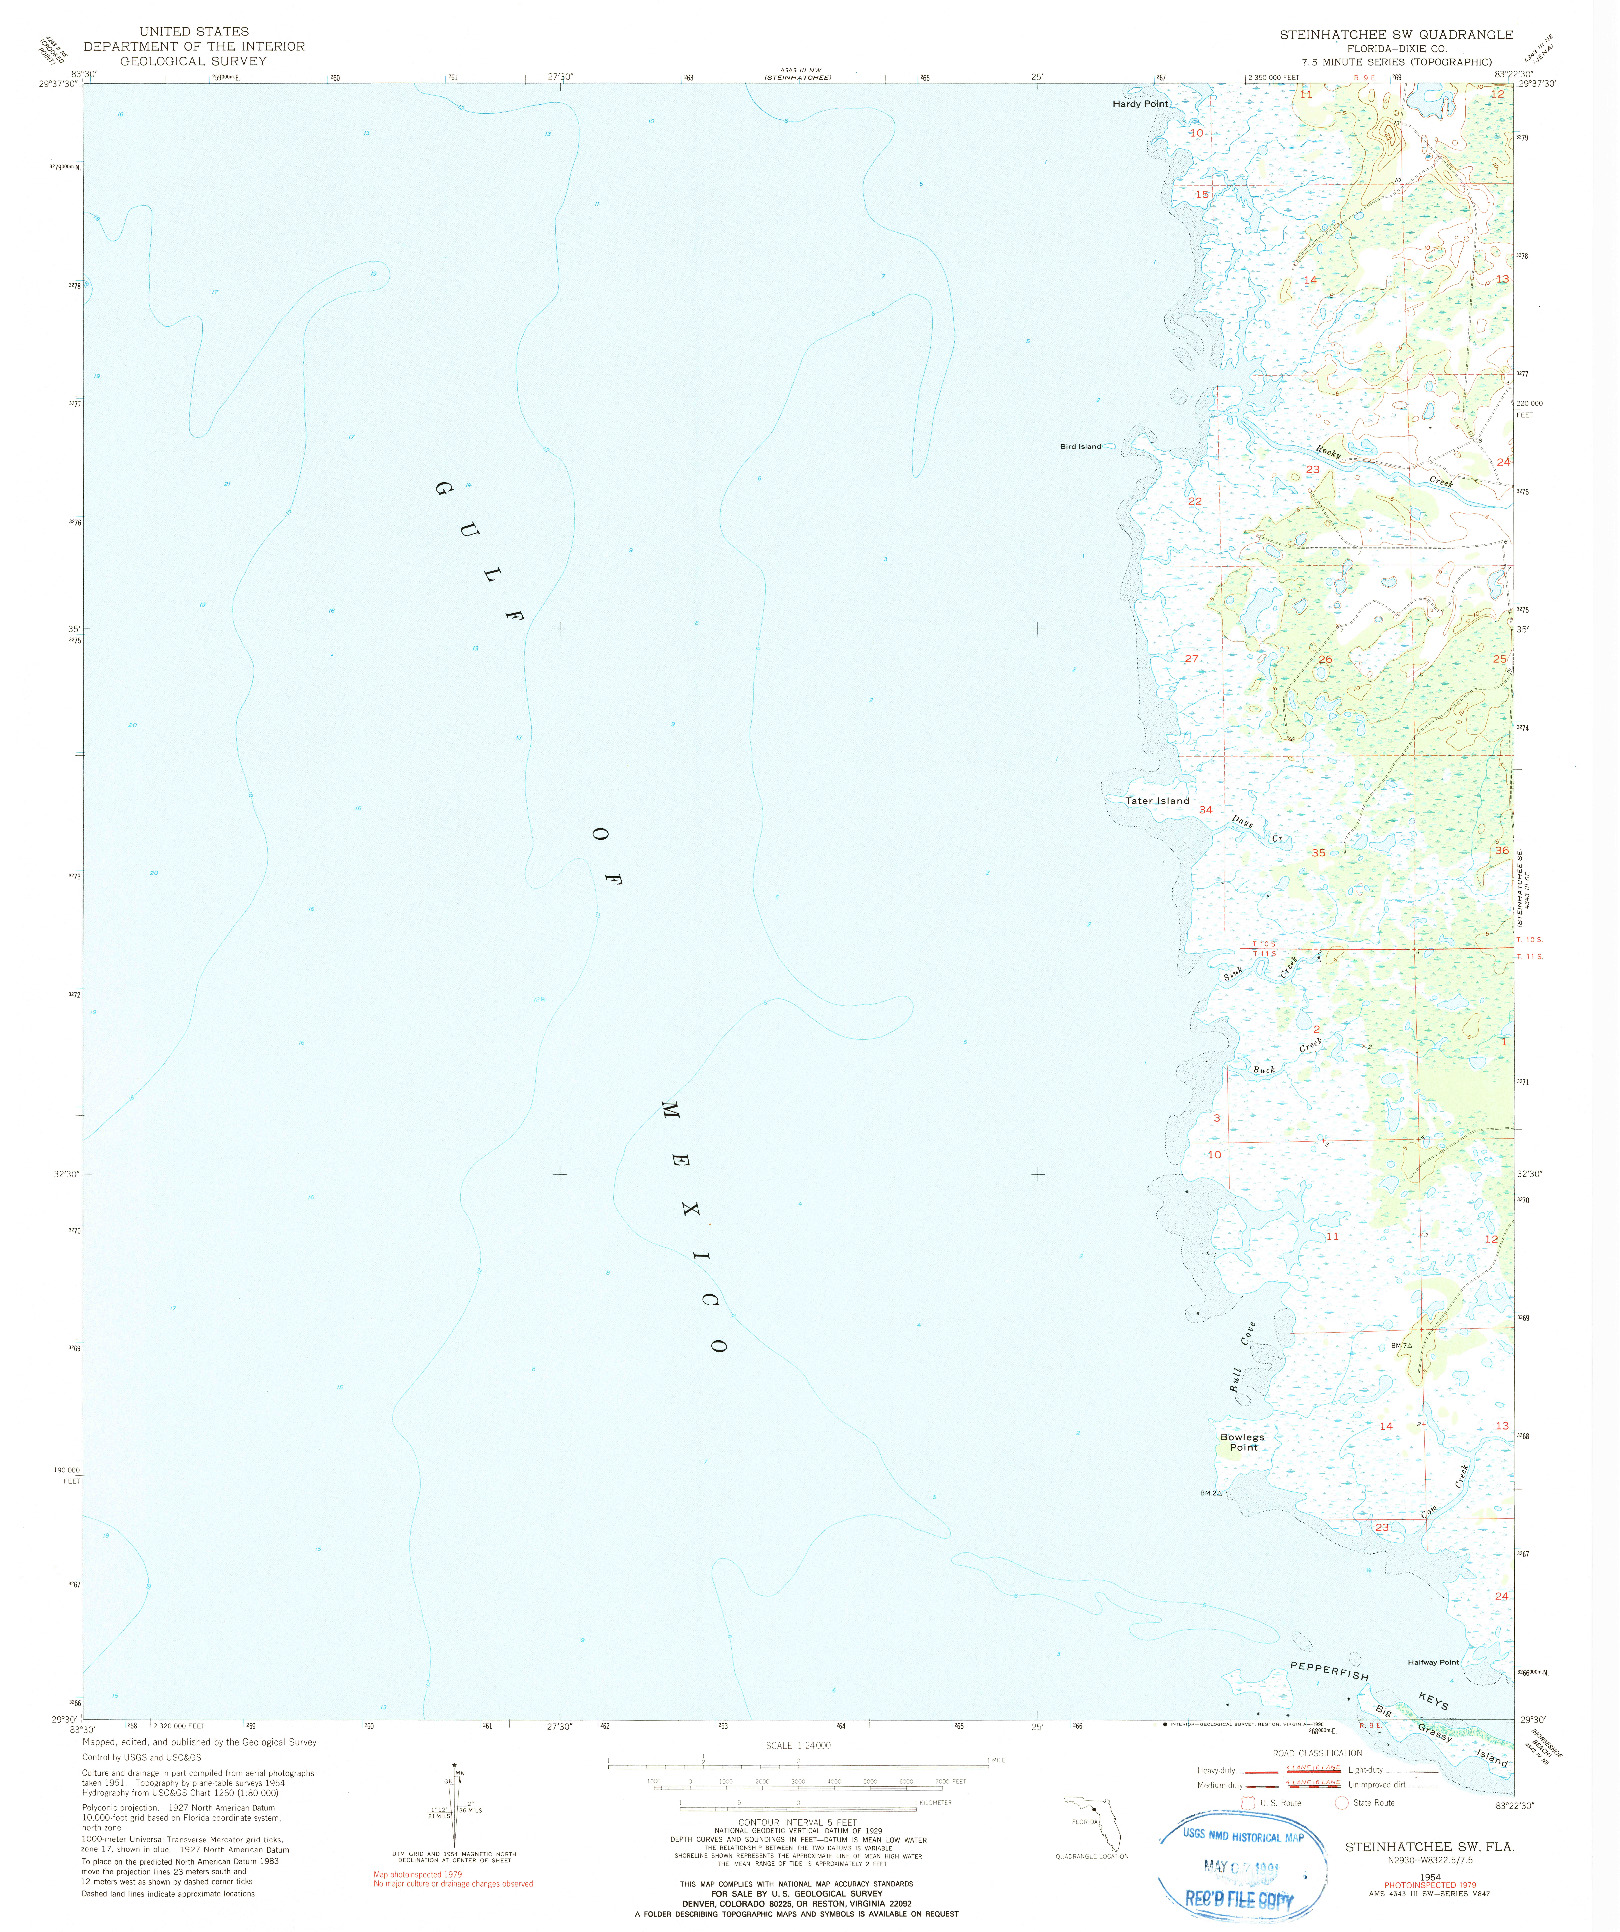 USGS 1:24000-SCALE QUADRANGLE FOR STEINHATCHEE SW, FL 1954